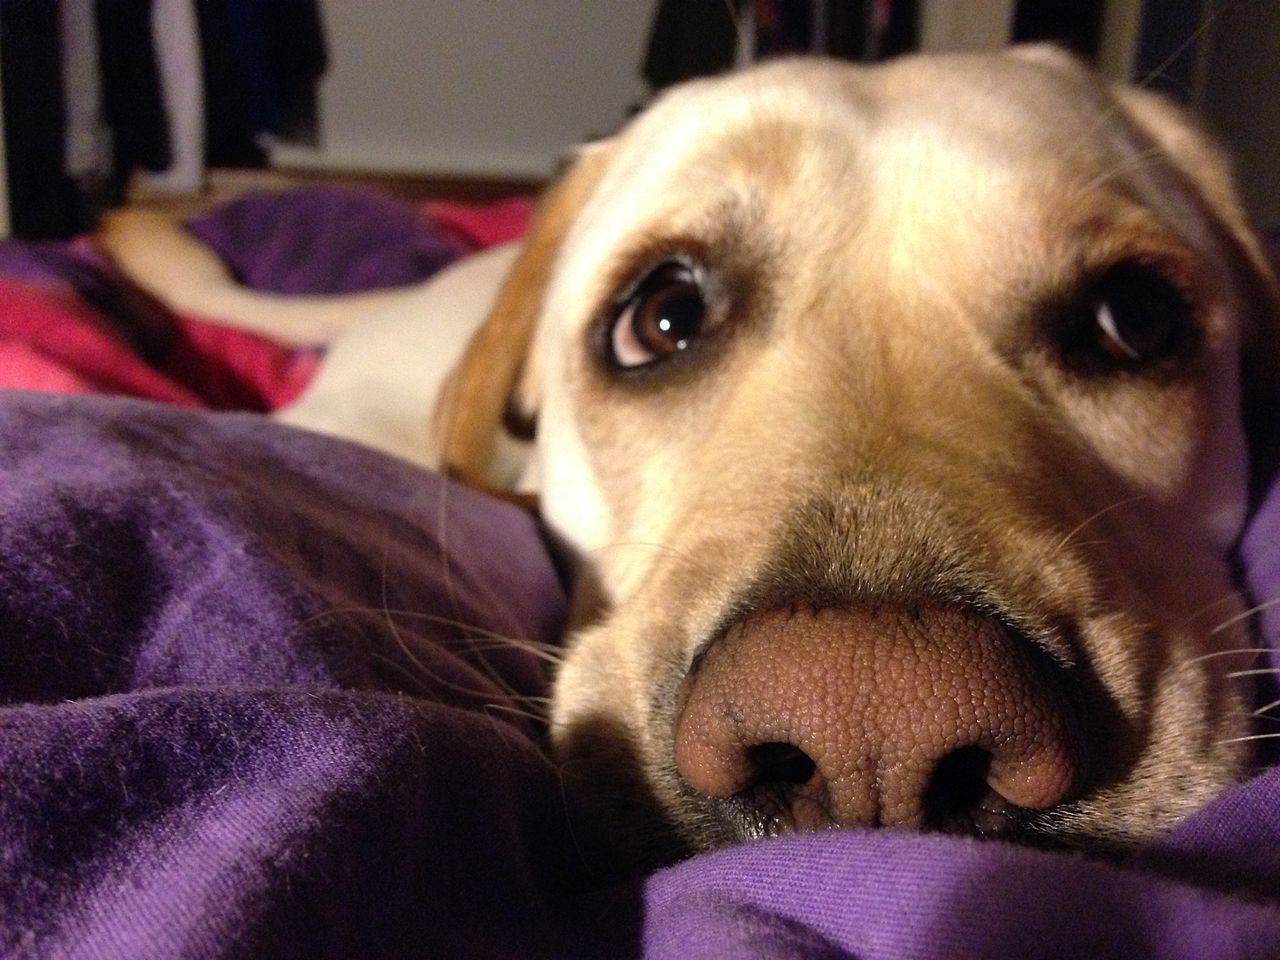 Perchè il cane si intrufola sotto le coperte?